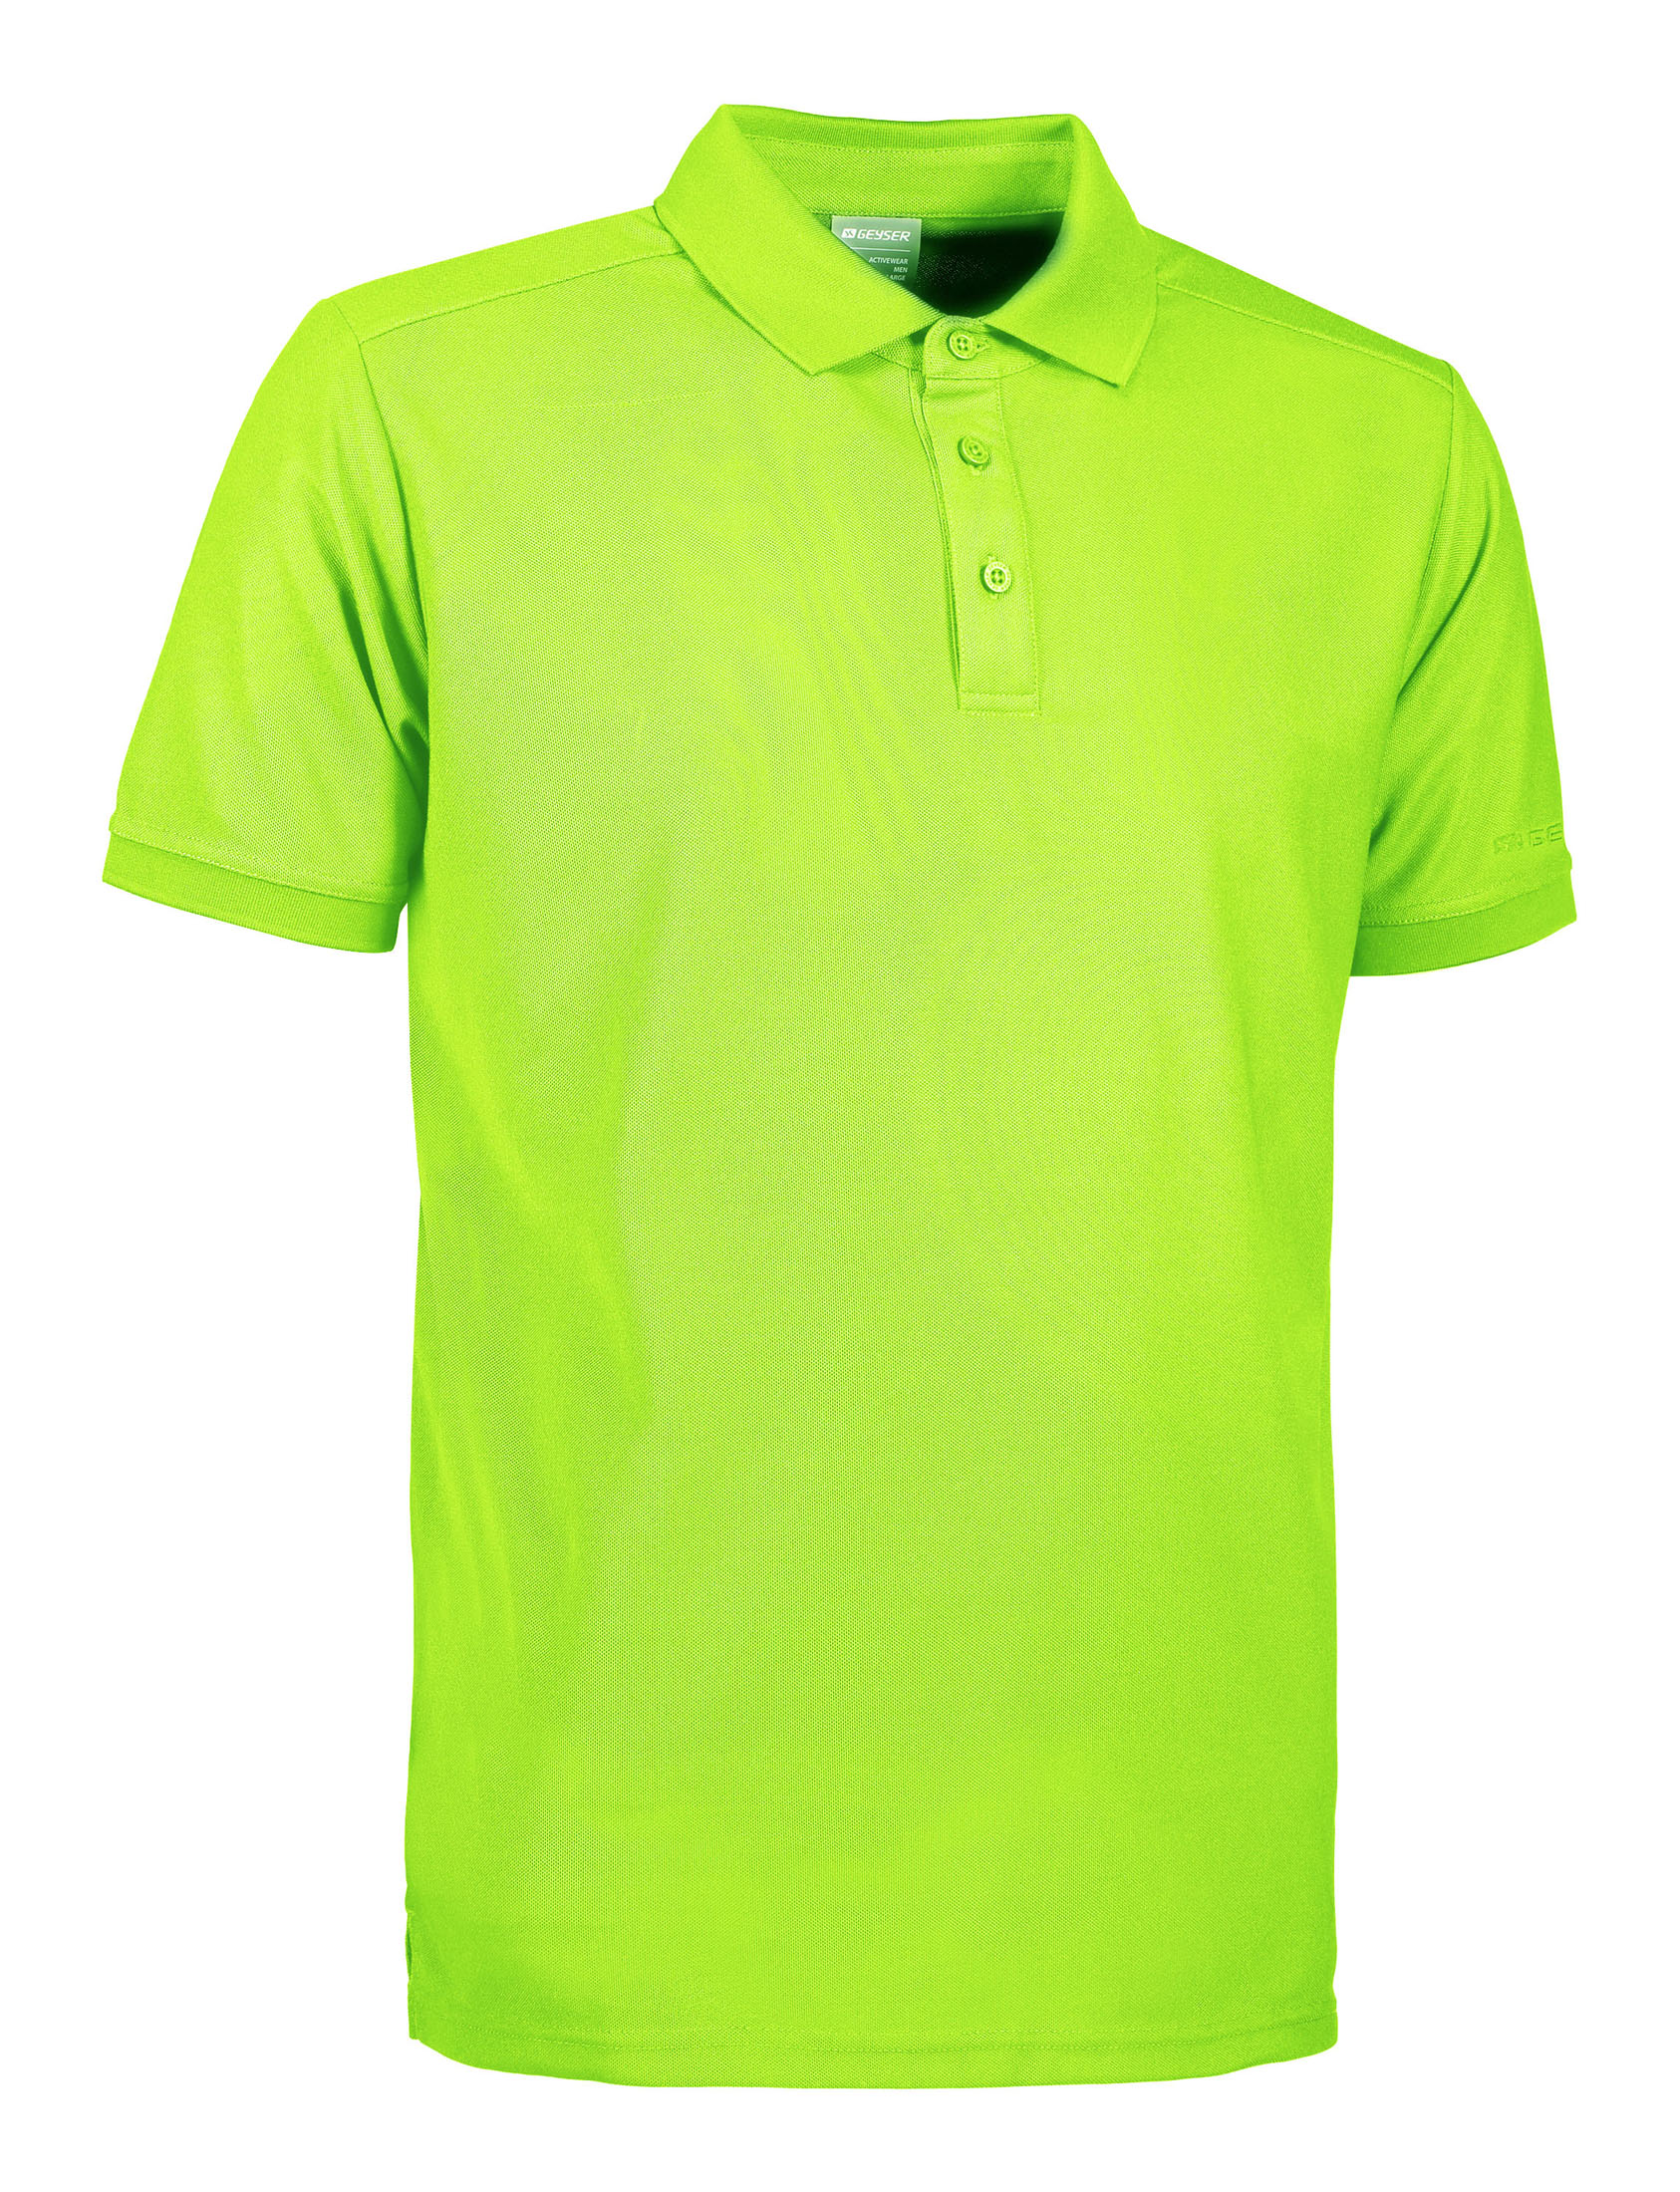 GEYSER polo shirt functional - Lime